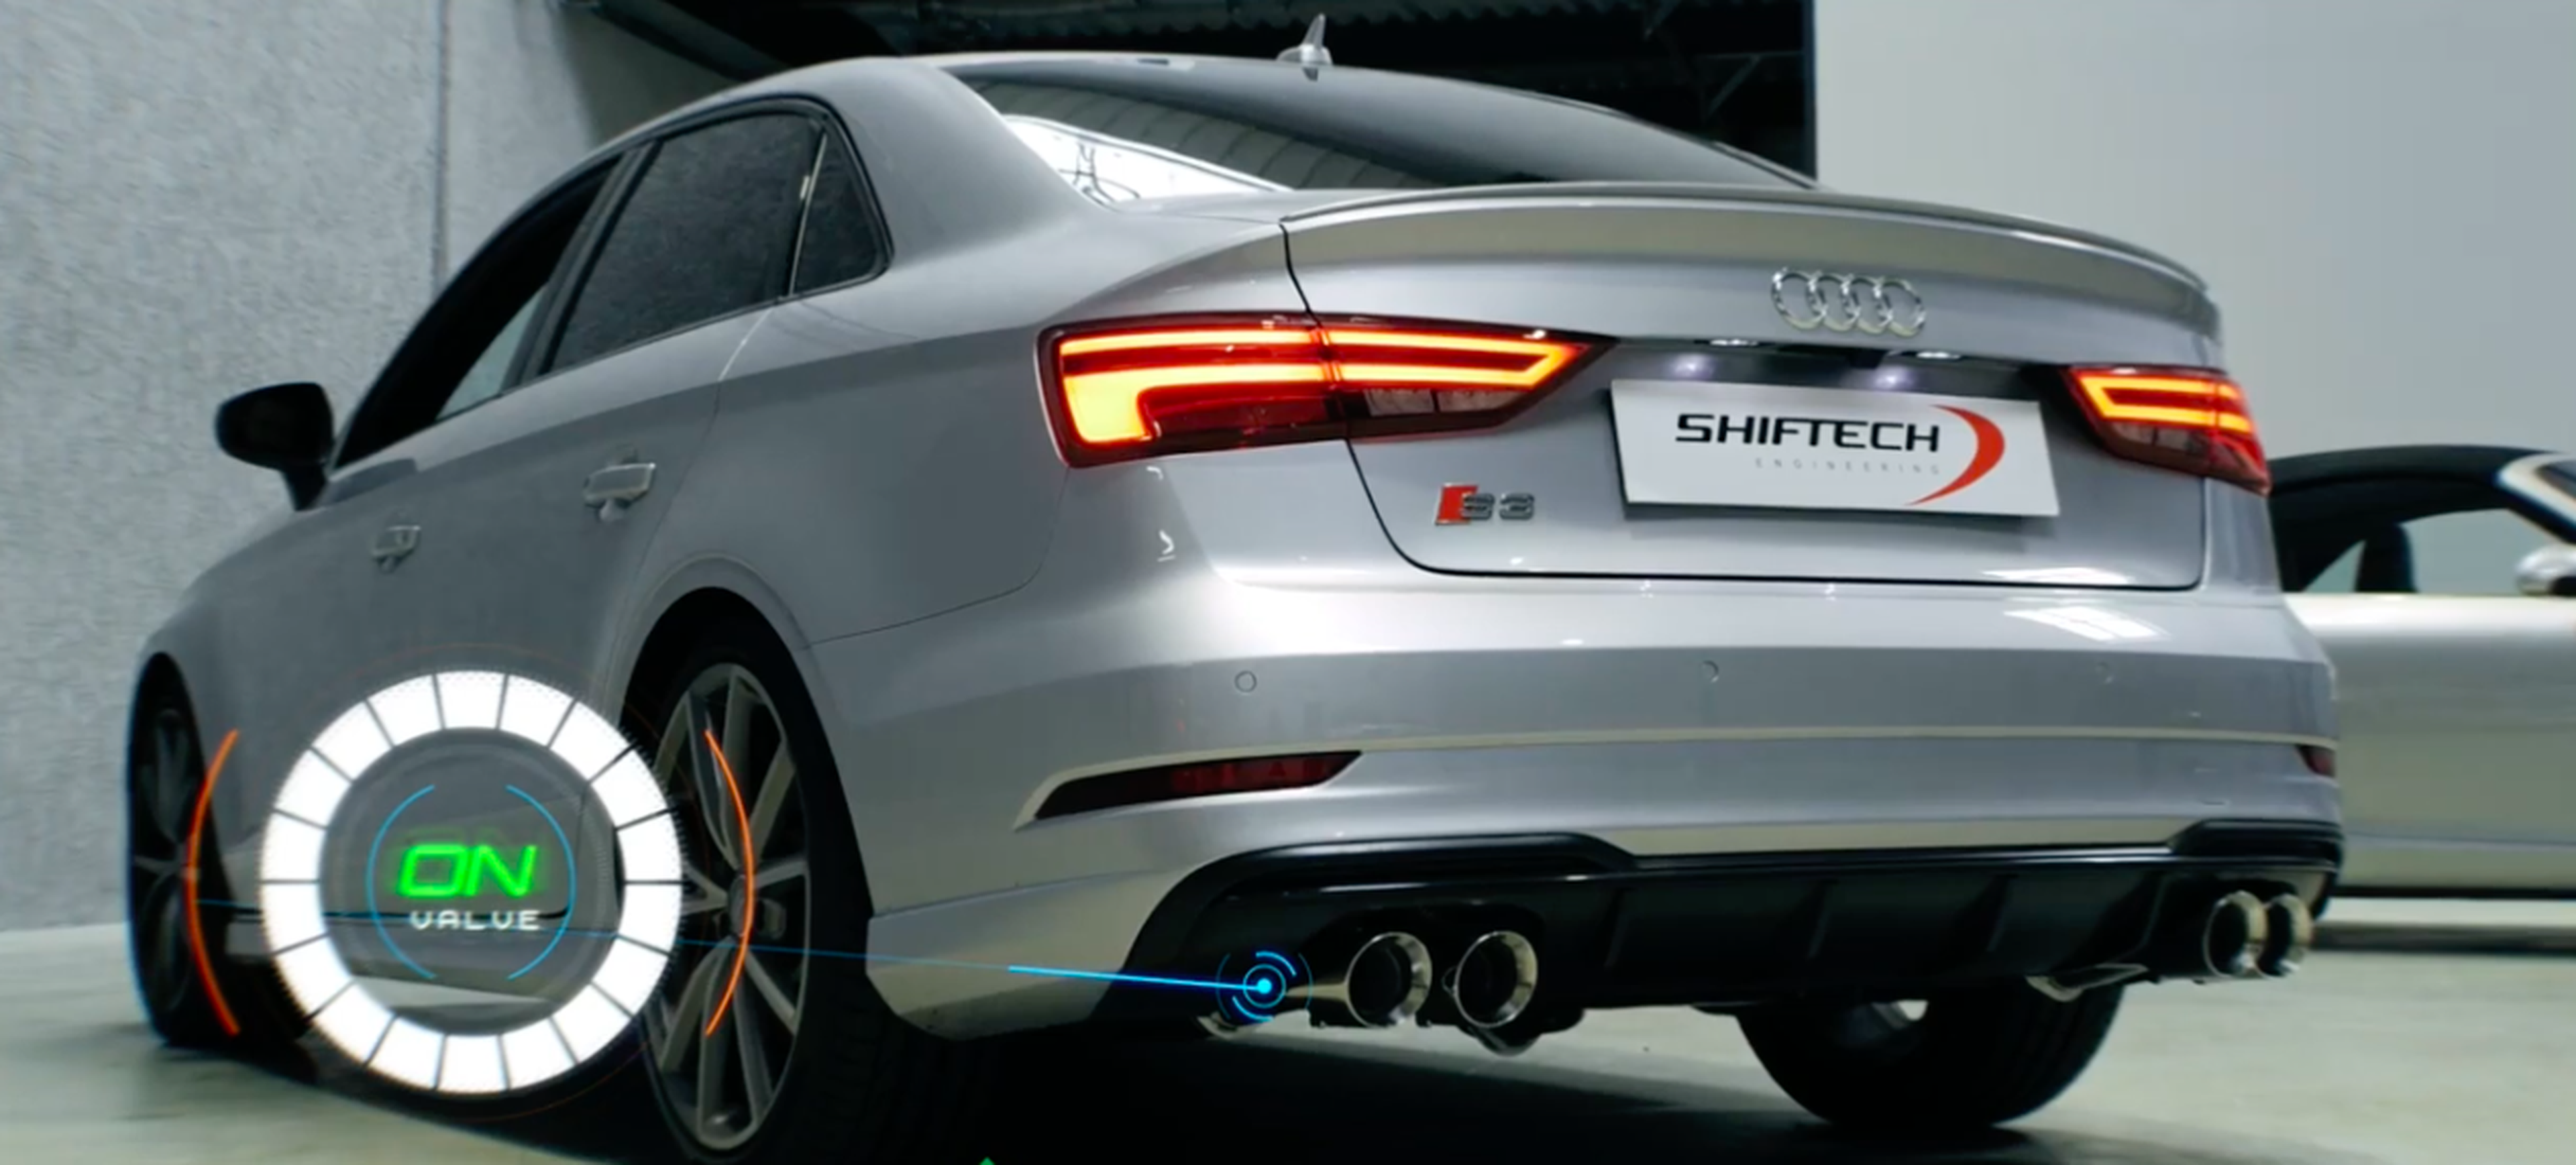 VÍDEO: Impresionante Audi S3 Sedán con escapes modificados de Armytrix